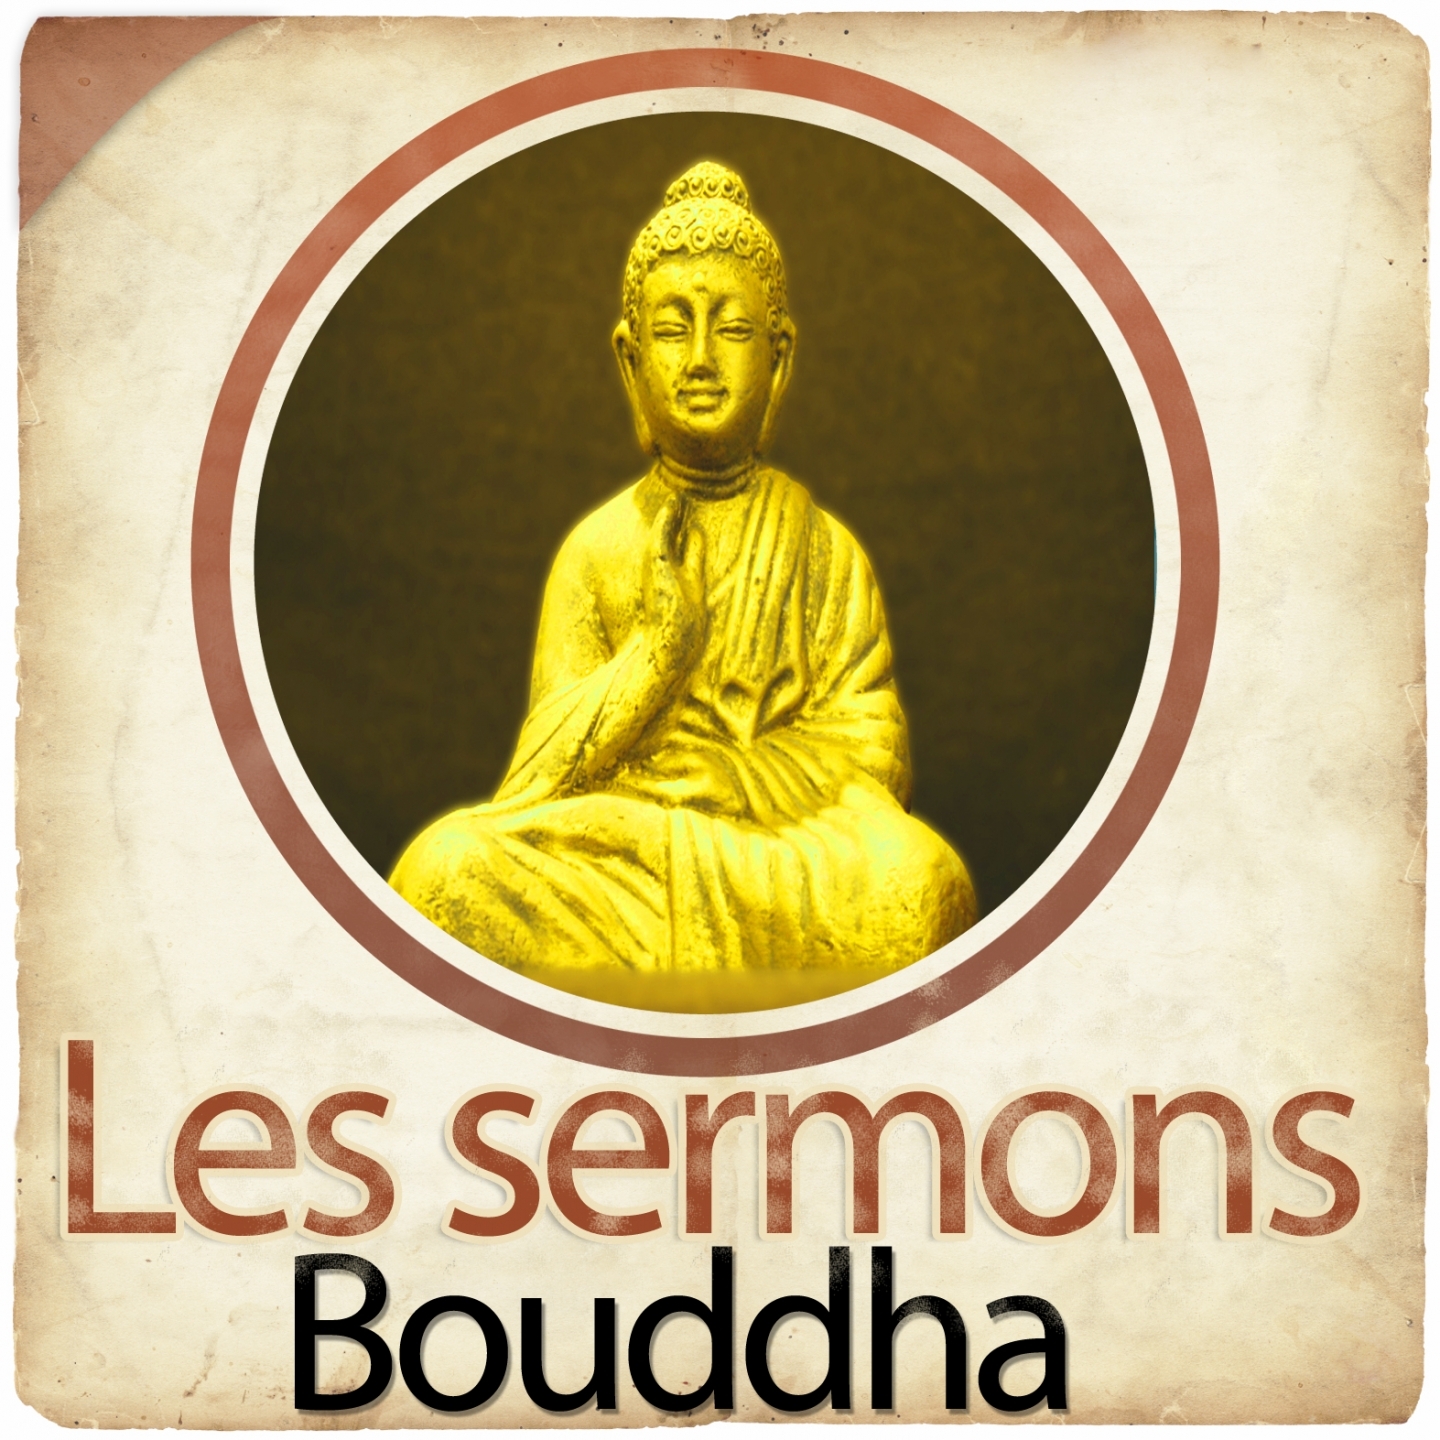 Les sermons de Bouddha, chapitre 11